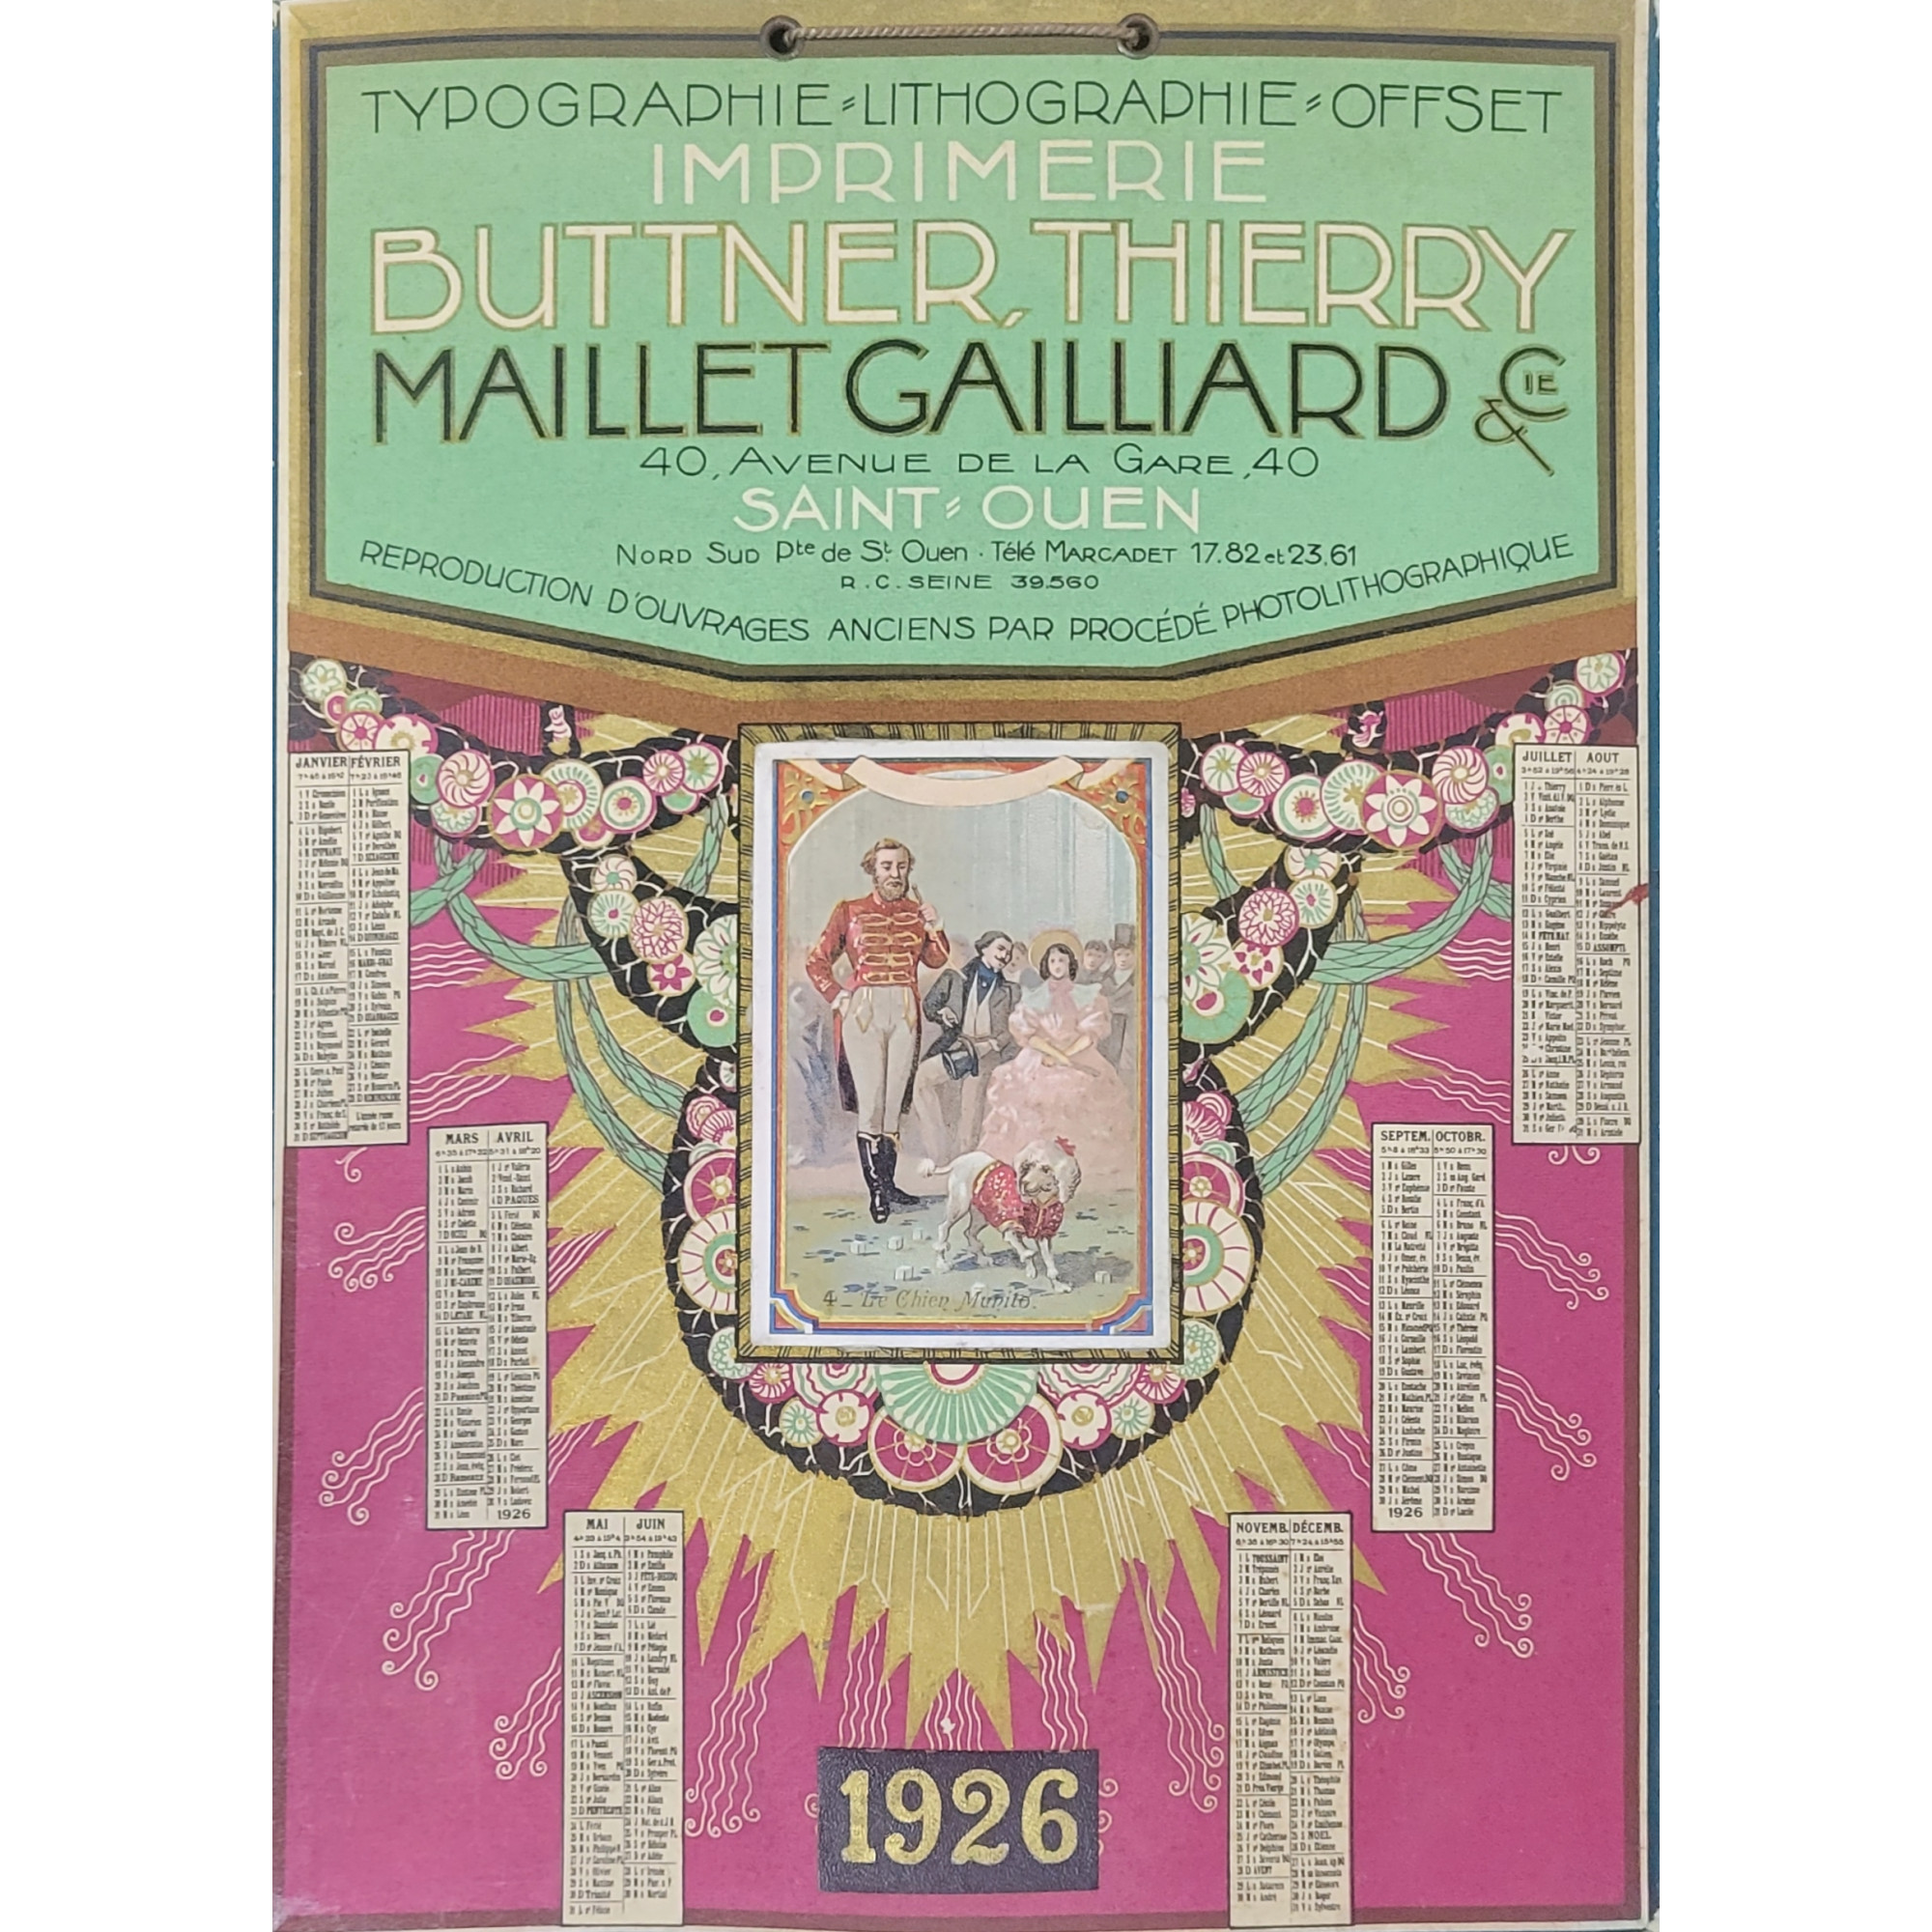 1926 Imprimerie Buttner, Thierry - Maillet Gailliard & Cie